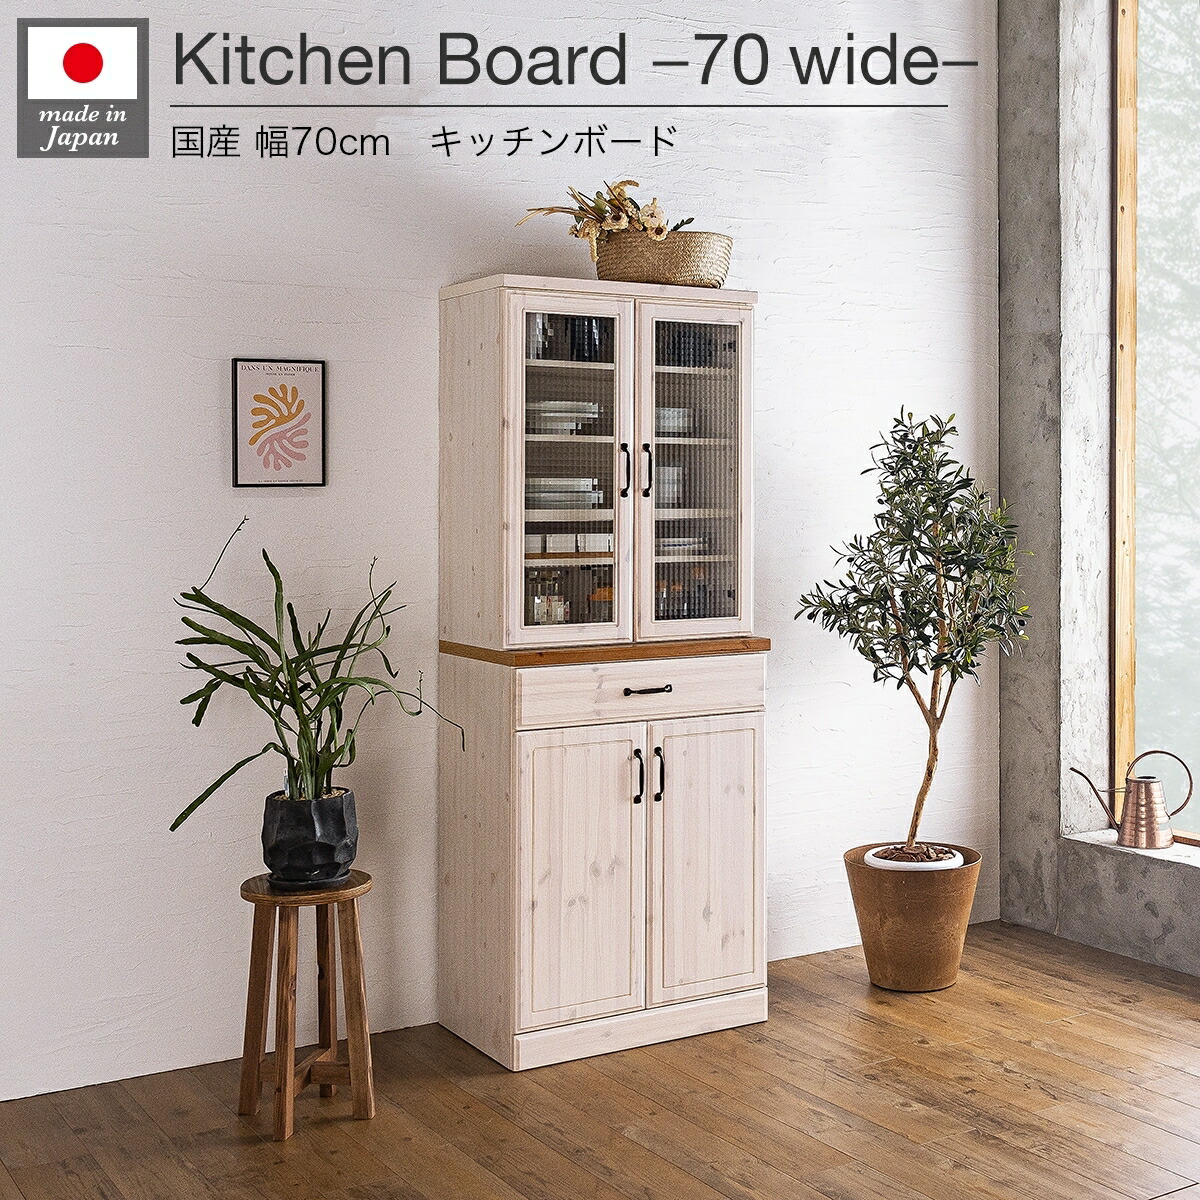 食器棚 キッチンボード ダイニングボード 70幅 日本製 収納 